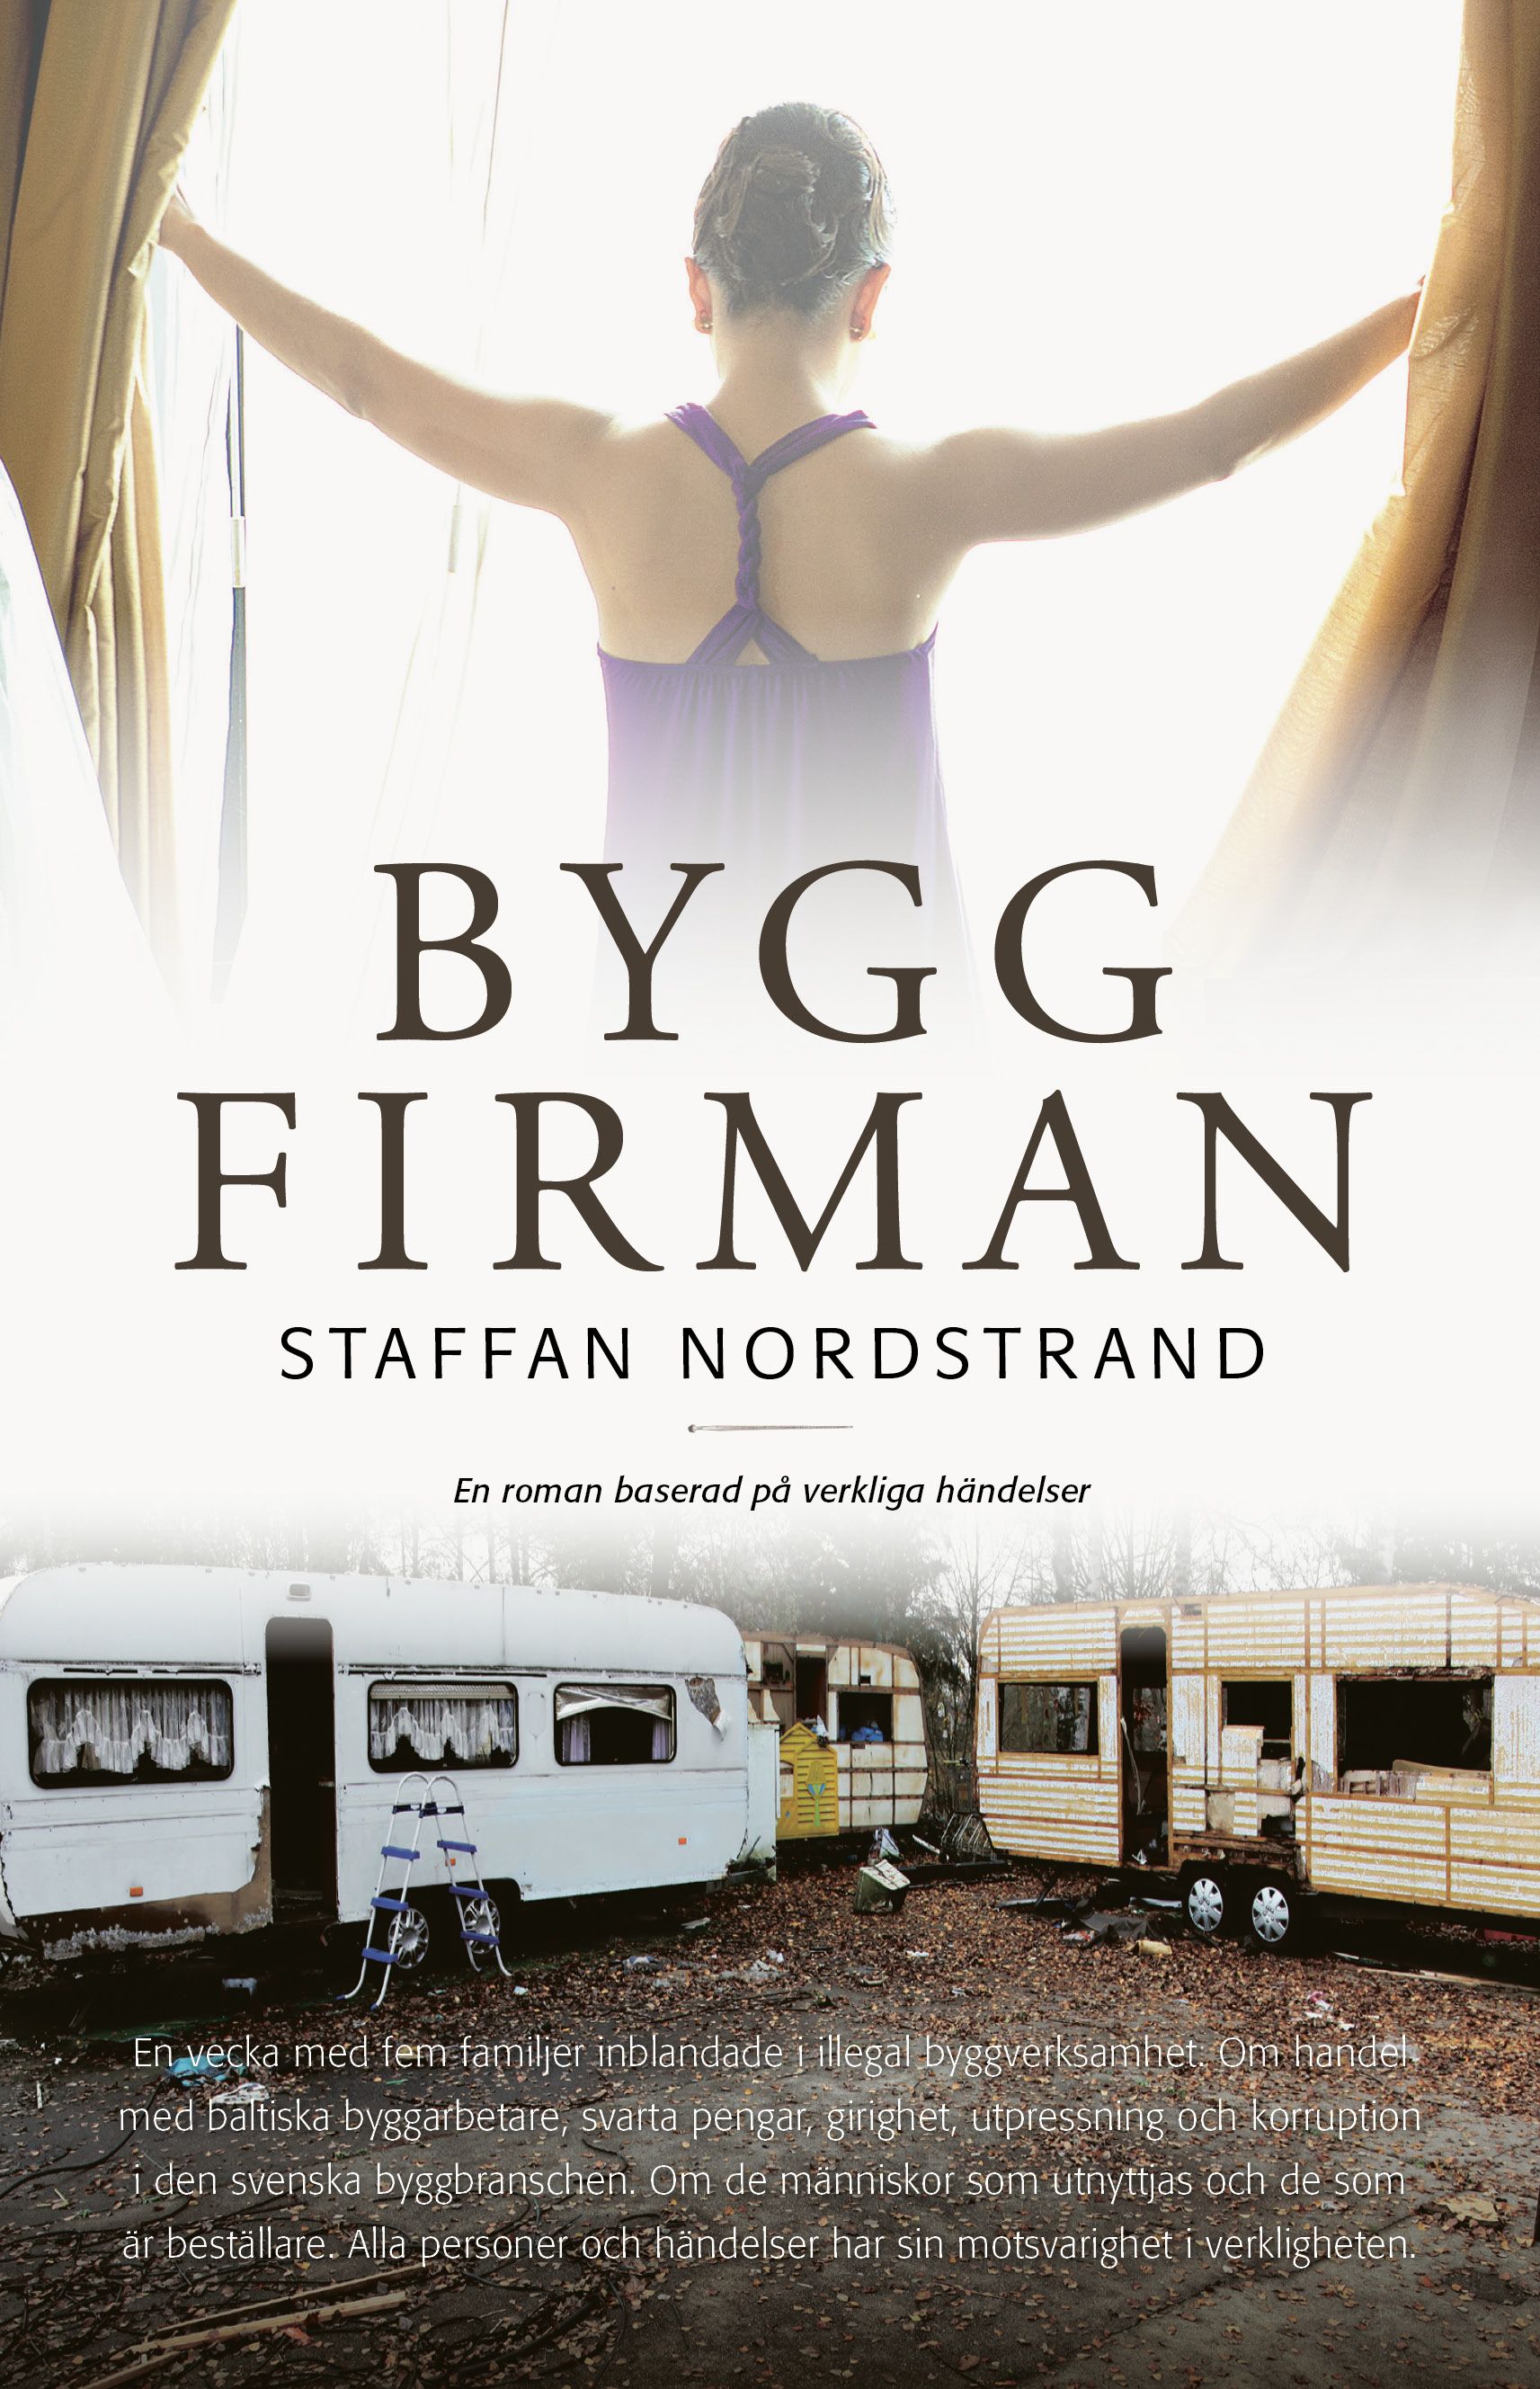 Byggfirman, e-bok av Staffan Nordstrand